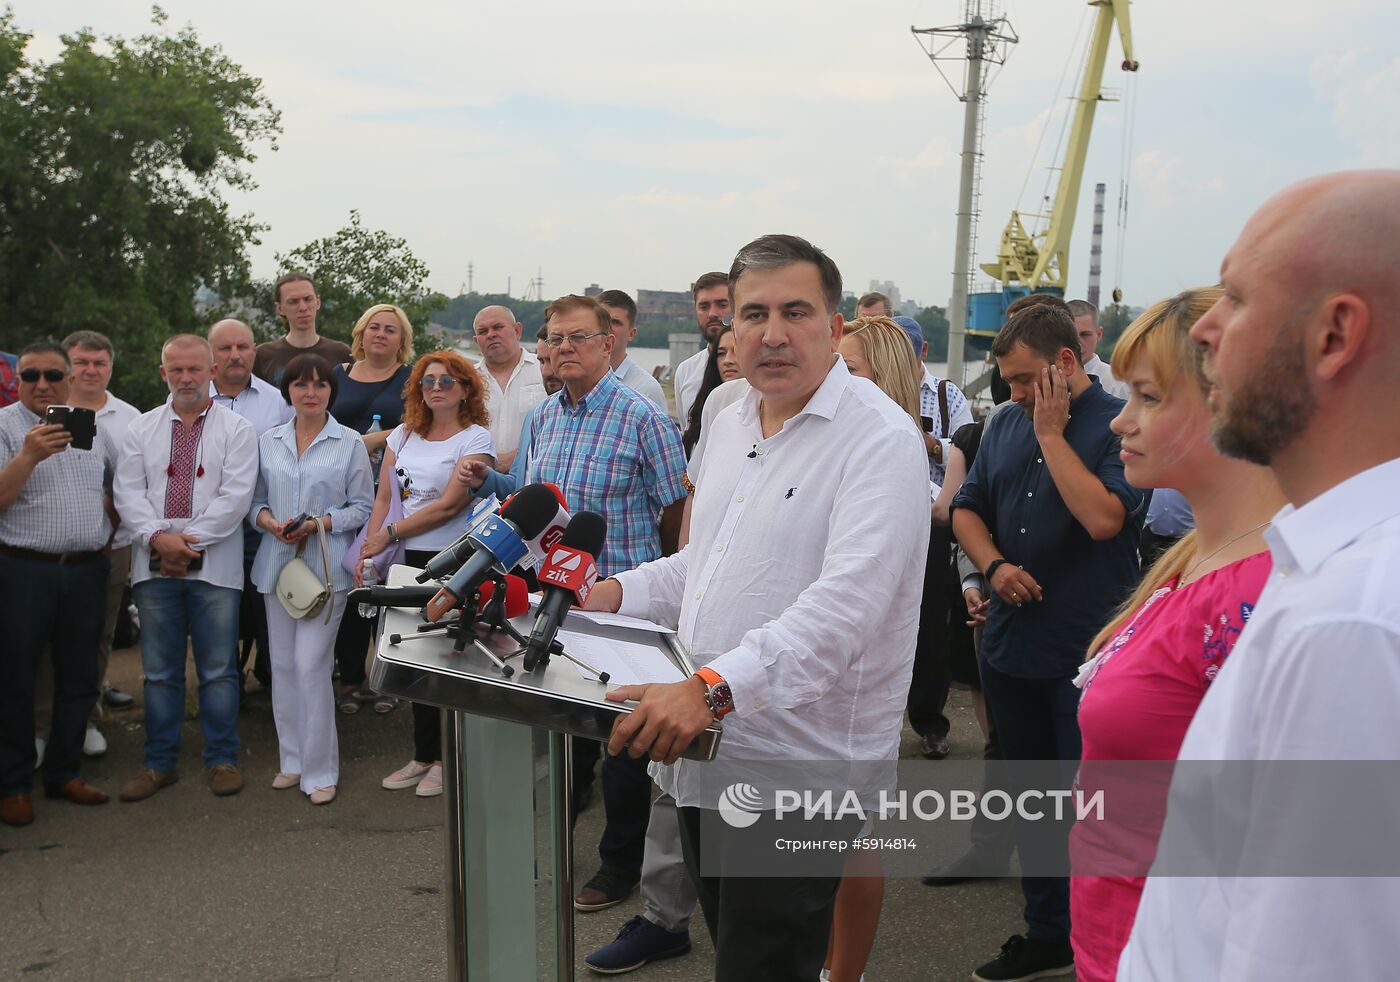 Пресс-конференция партии "Движение новых сил" в Киеве